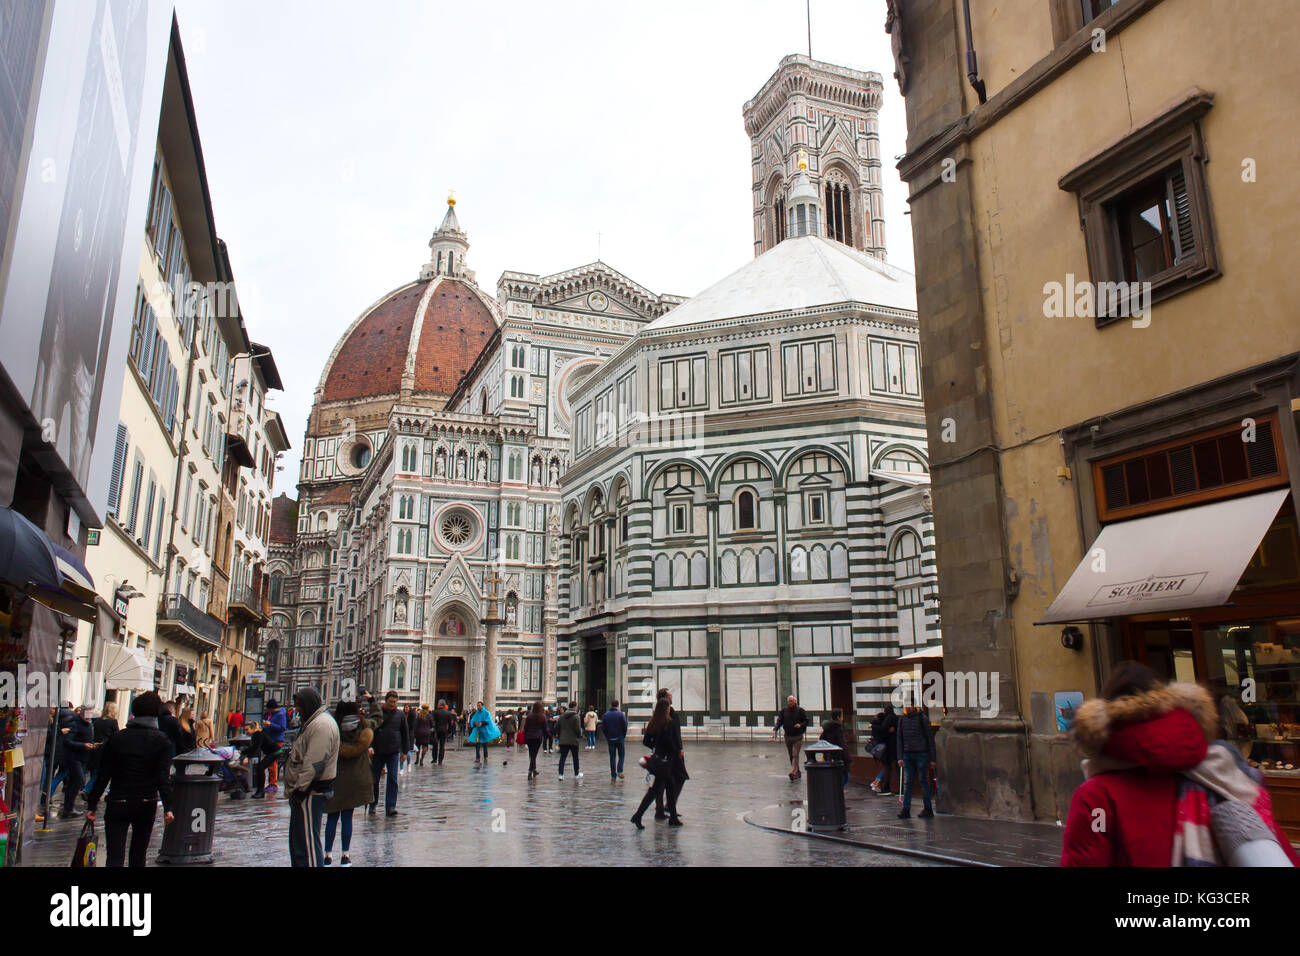 FLORENCE, ITALY - FEBRUARY 06, 2017: Piazza del Duomo (Cattedrale di Santa Maria del Fiore)  in Firenze, Italy Stock Photo